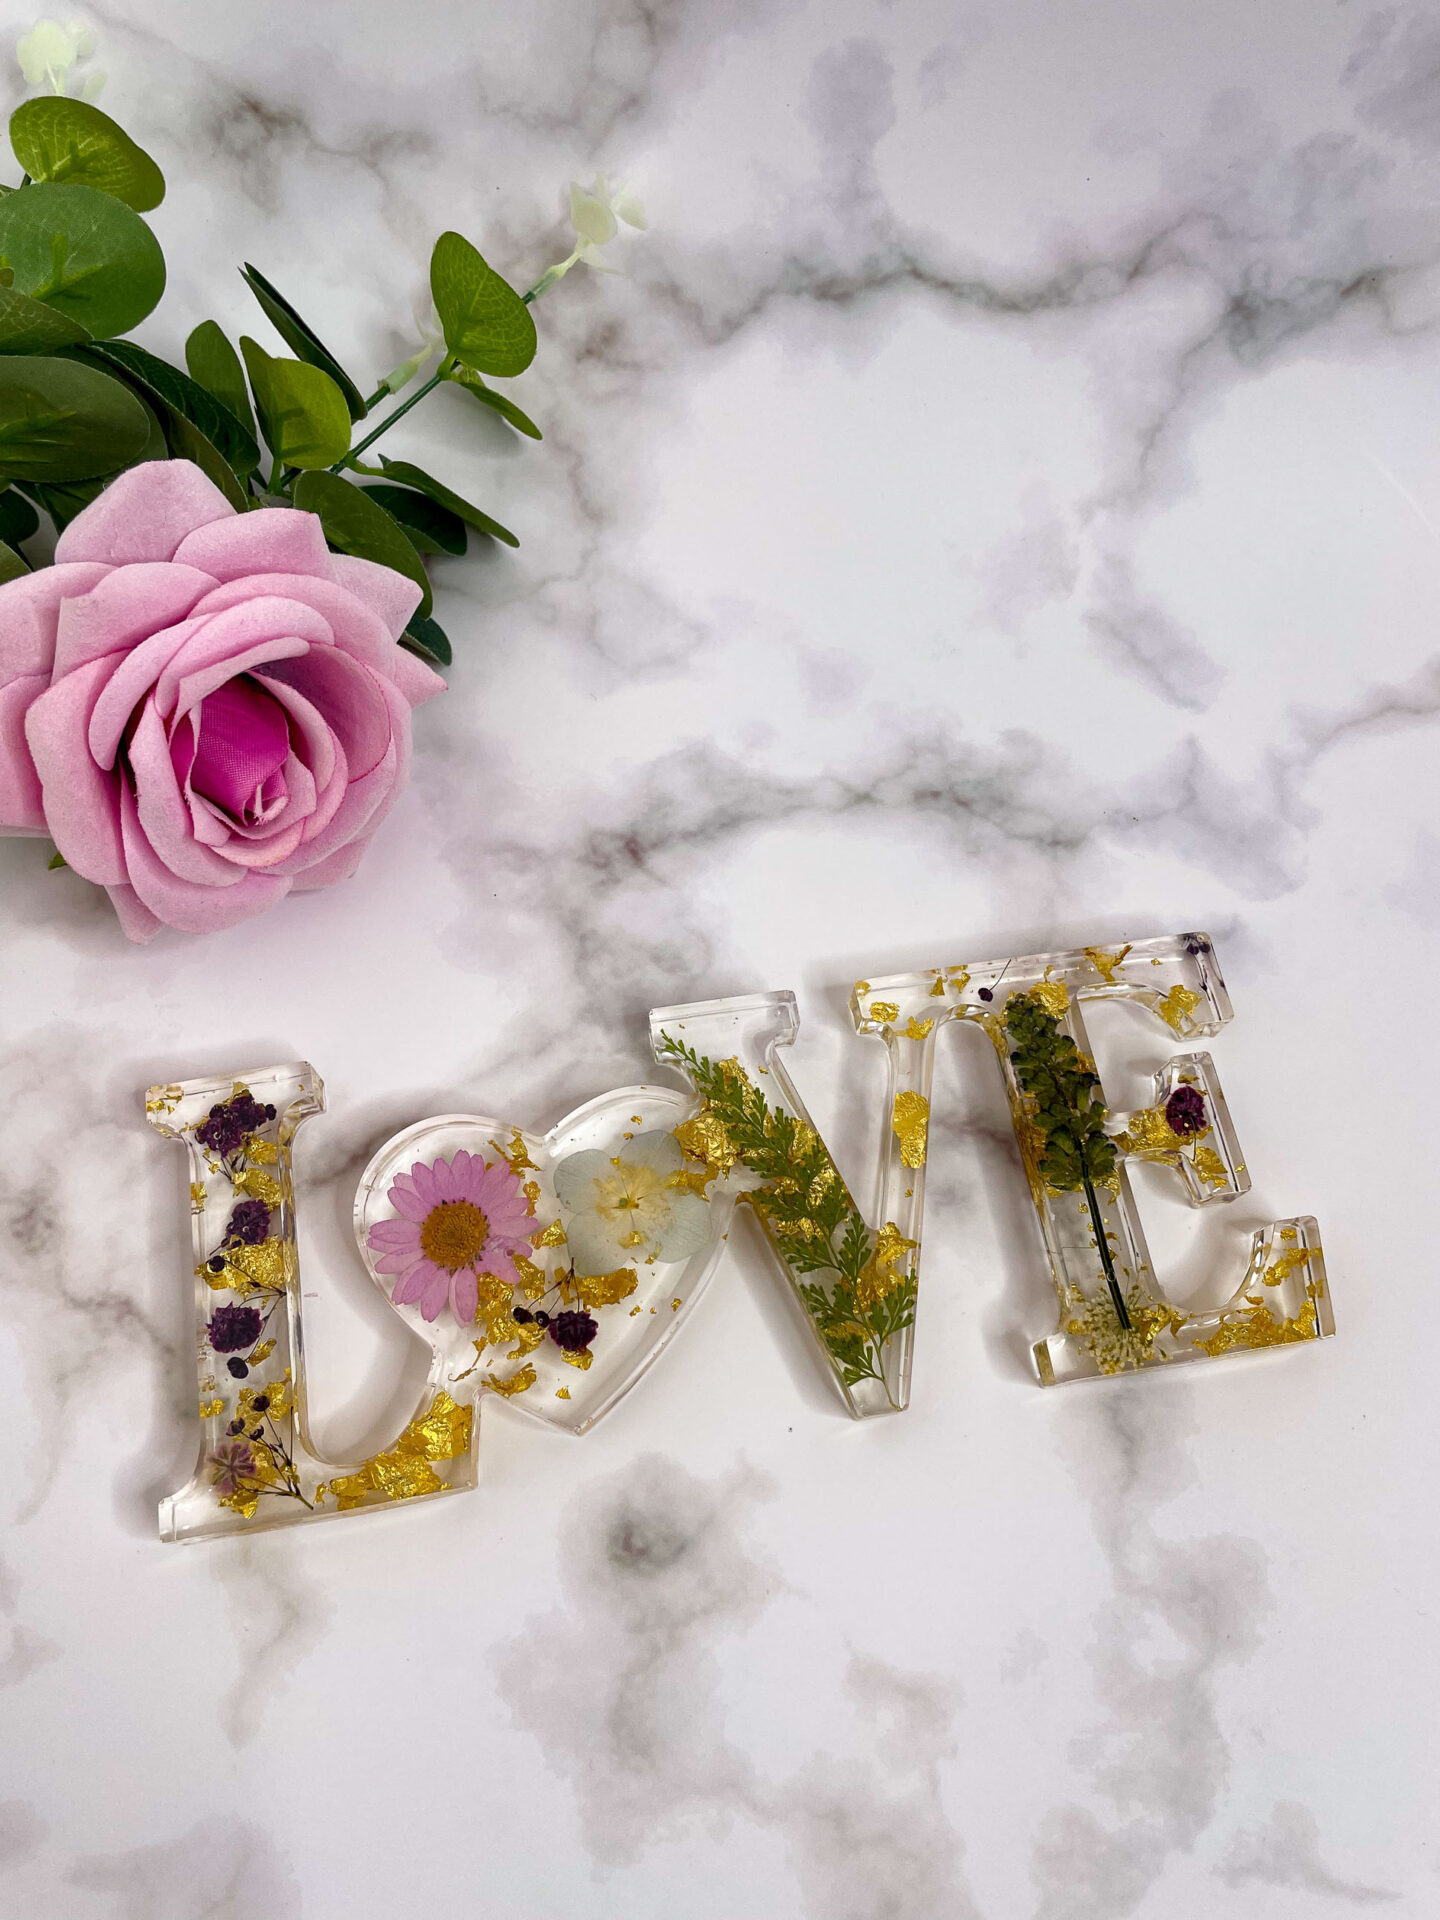 Mot décoratif en résine - LOVE - fleur rose - idées cadeaux pour la saint valentin - boutique idées cadeaux - boutique en ligne - création française et artisanale.